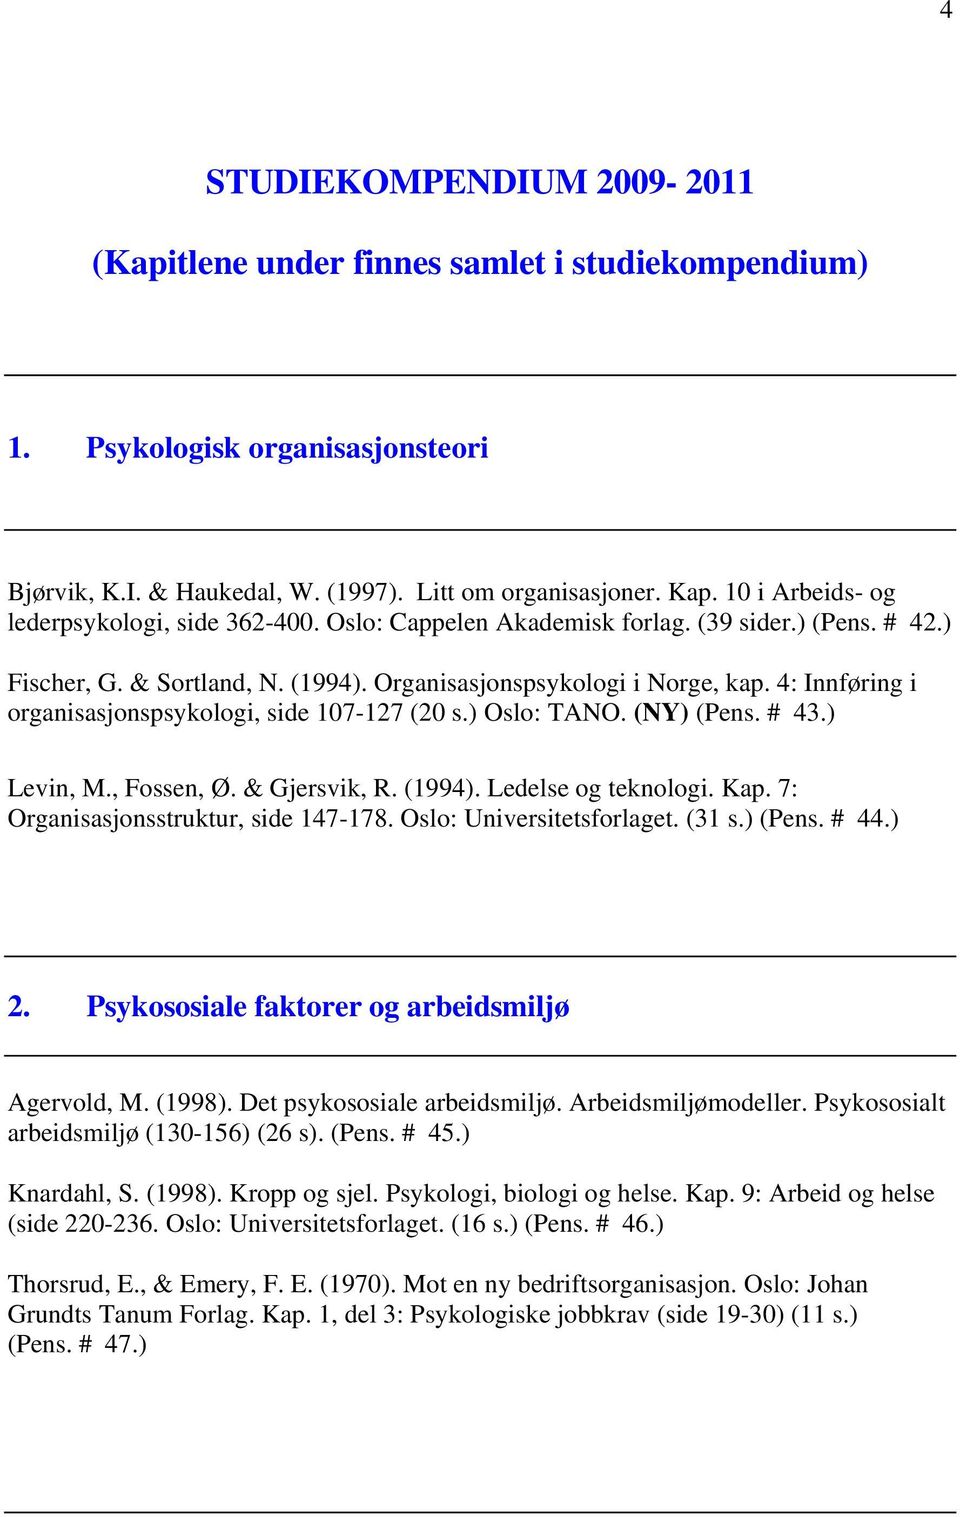 4: Innføring i organisasjonspsykologi, side 107-127 (20 s.) Oslo: TANO. (NY) (Pens. # 43.) Levin, M., Fossen, Ø. & Gjersvik, R. (1994). Ledelse og teknologi. Kap.